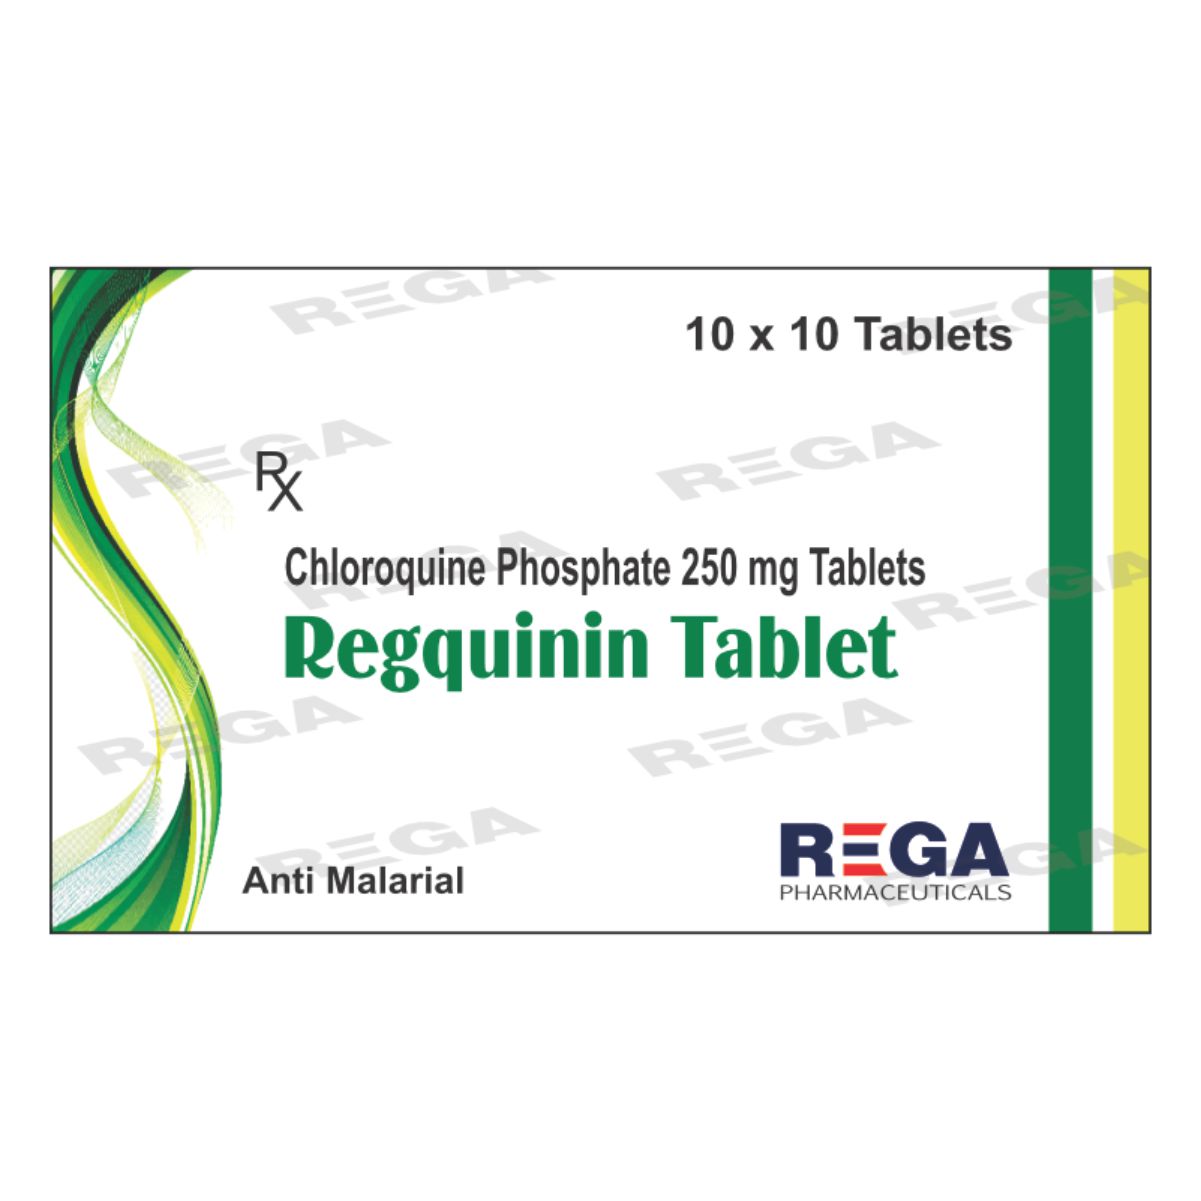 Chloroquine Phosphate Tablets 250 mg